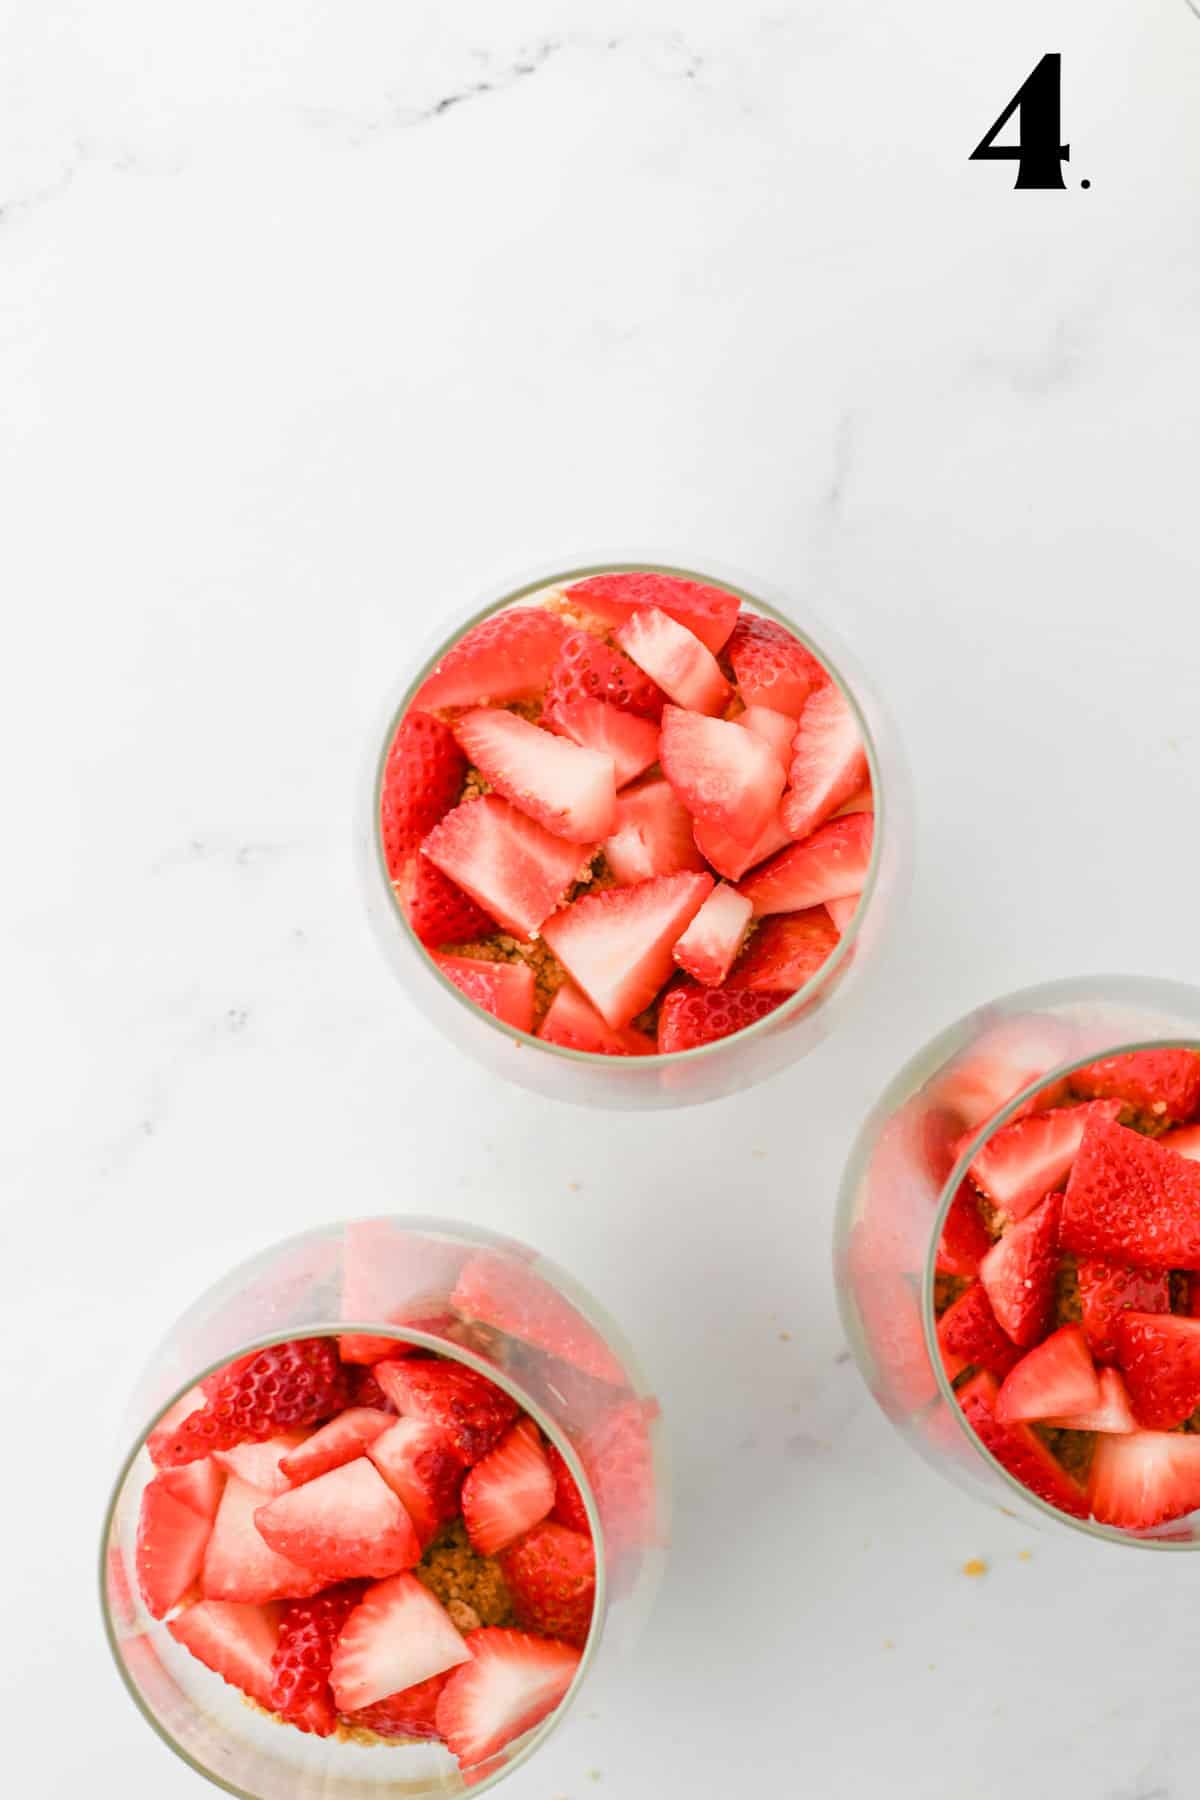 How to Make Strawberry Cheesecake Parfaits - Step 4 layering strawberries.